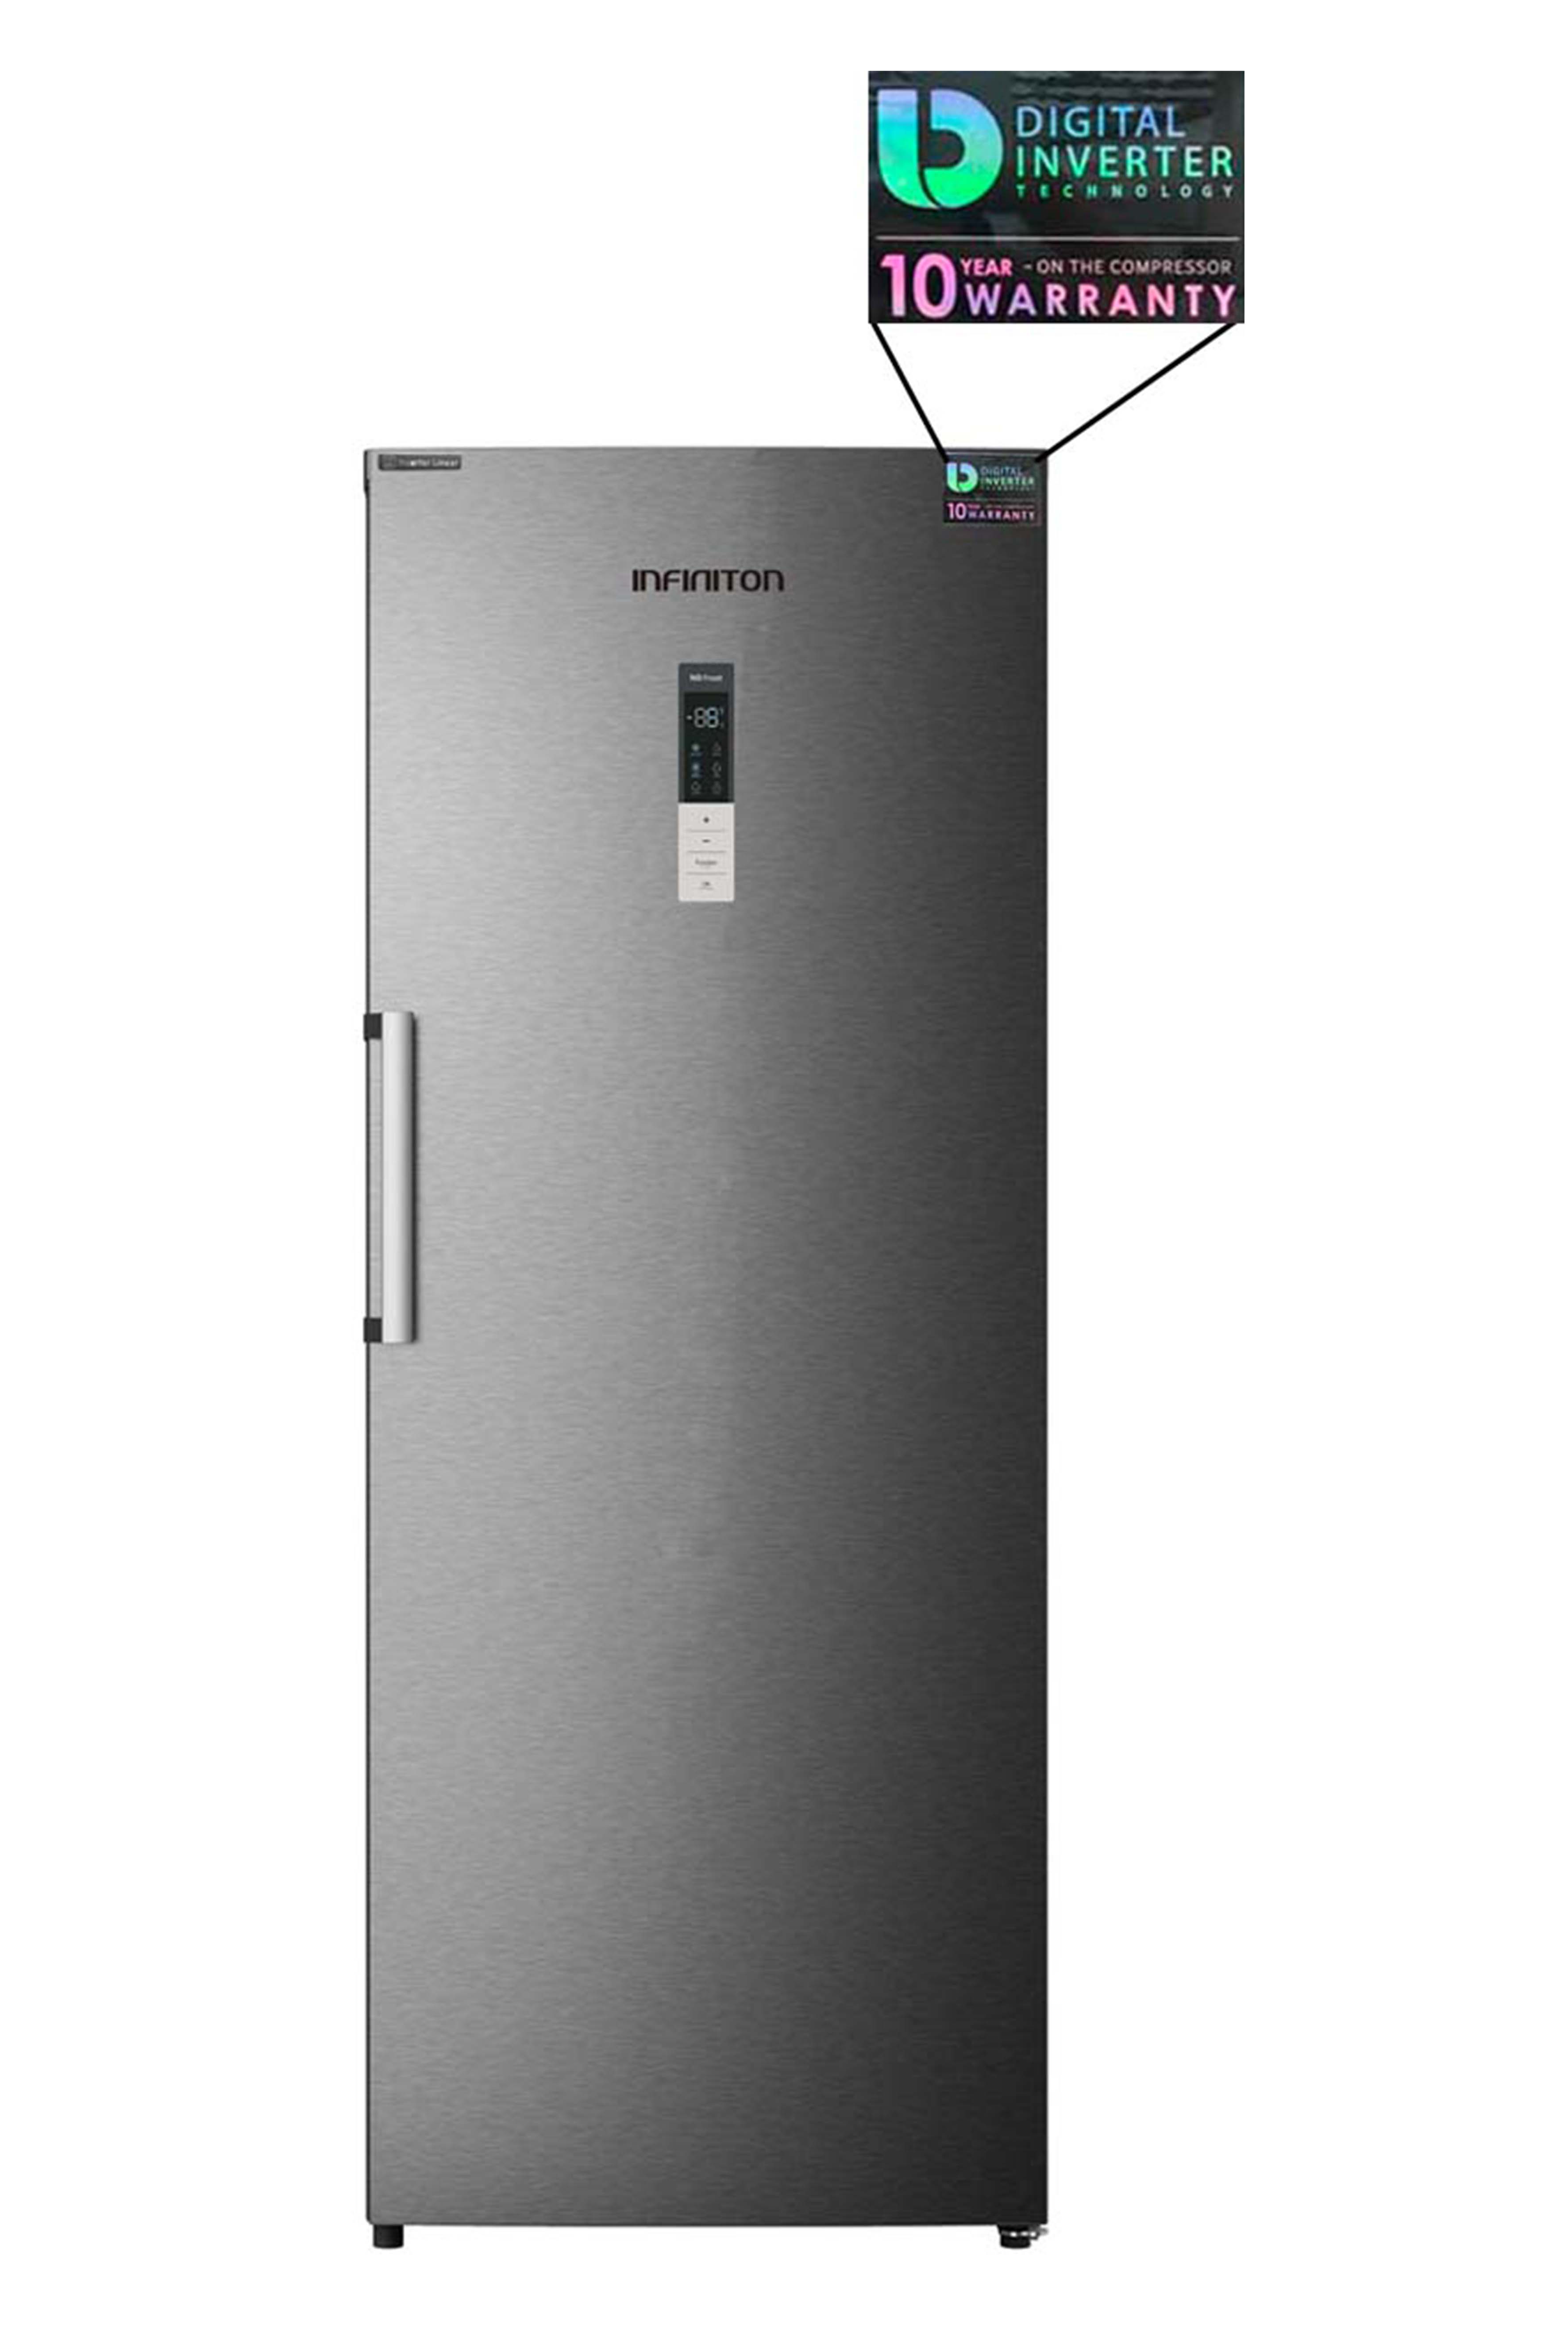 Separación Oscuro Zanahoria Congelador Vertical - Infiniton CV-870IX, Inox, 380 litros,1,85m A++ / E